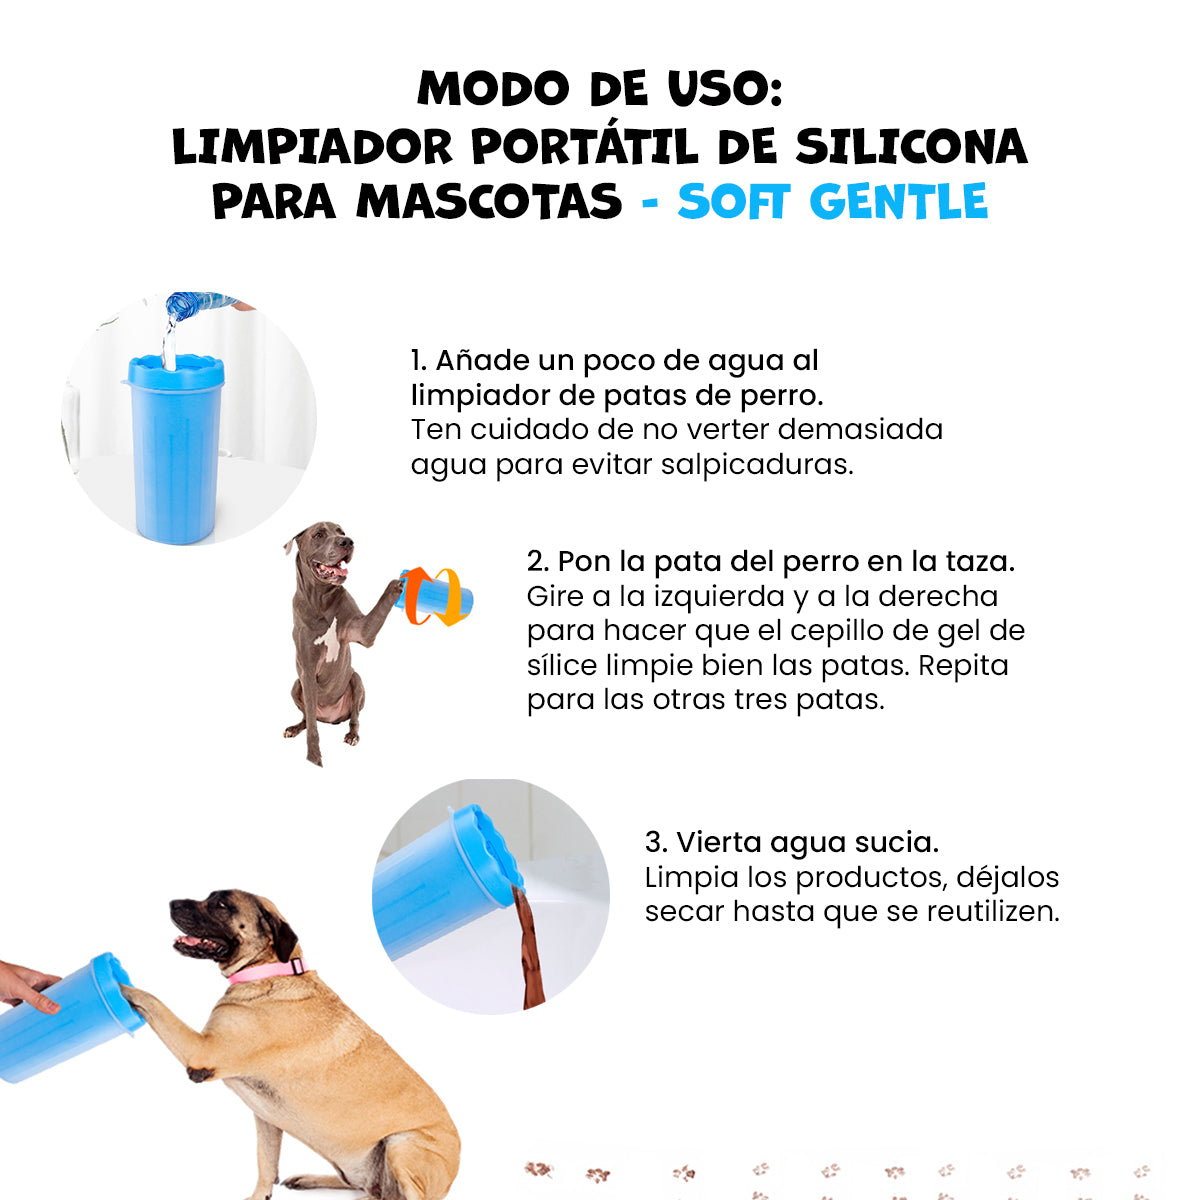 Limpiador portátil de silicona para mascotas Rosado - Soft gentle